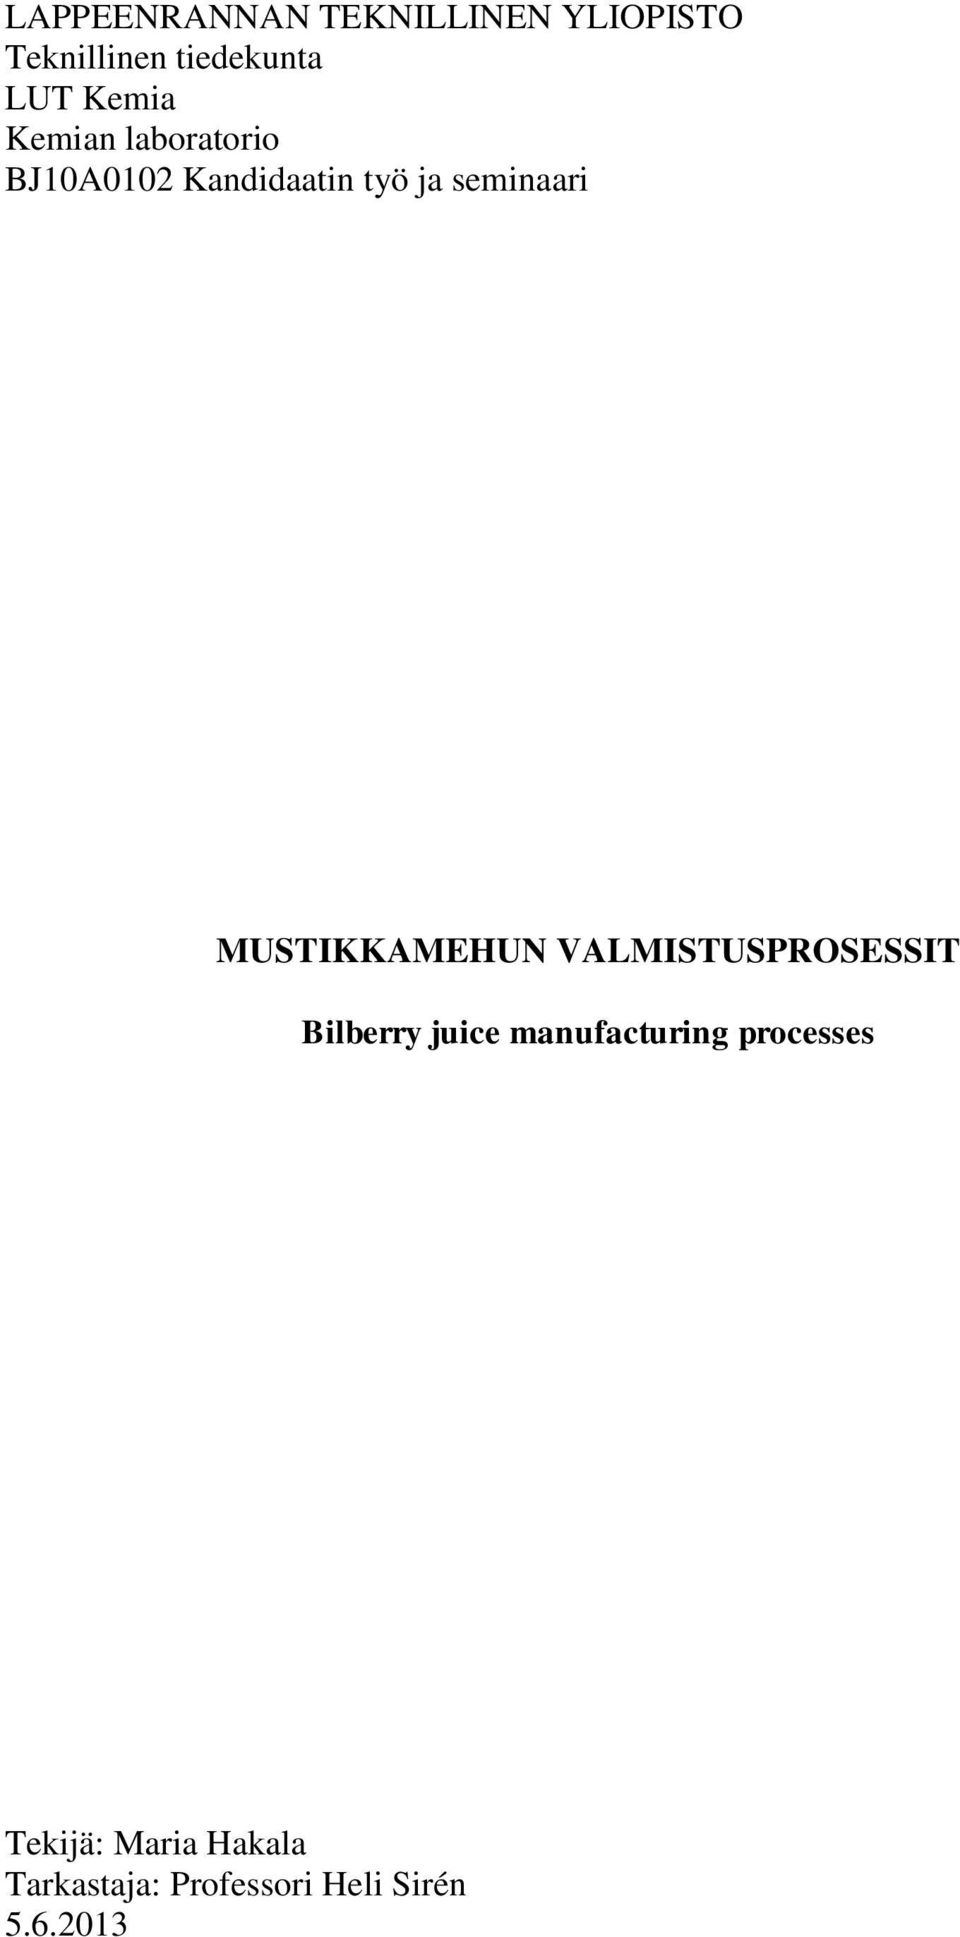 MUSTIKKAMEHUN VALMISTUSPROSESSIT Bilberry juice manufacturing